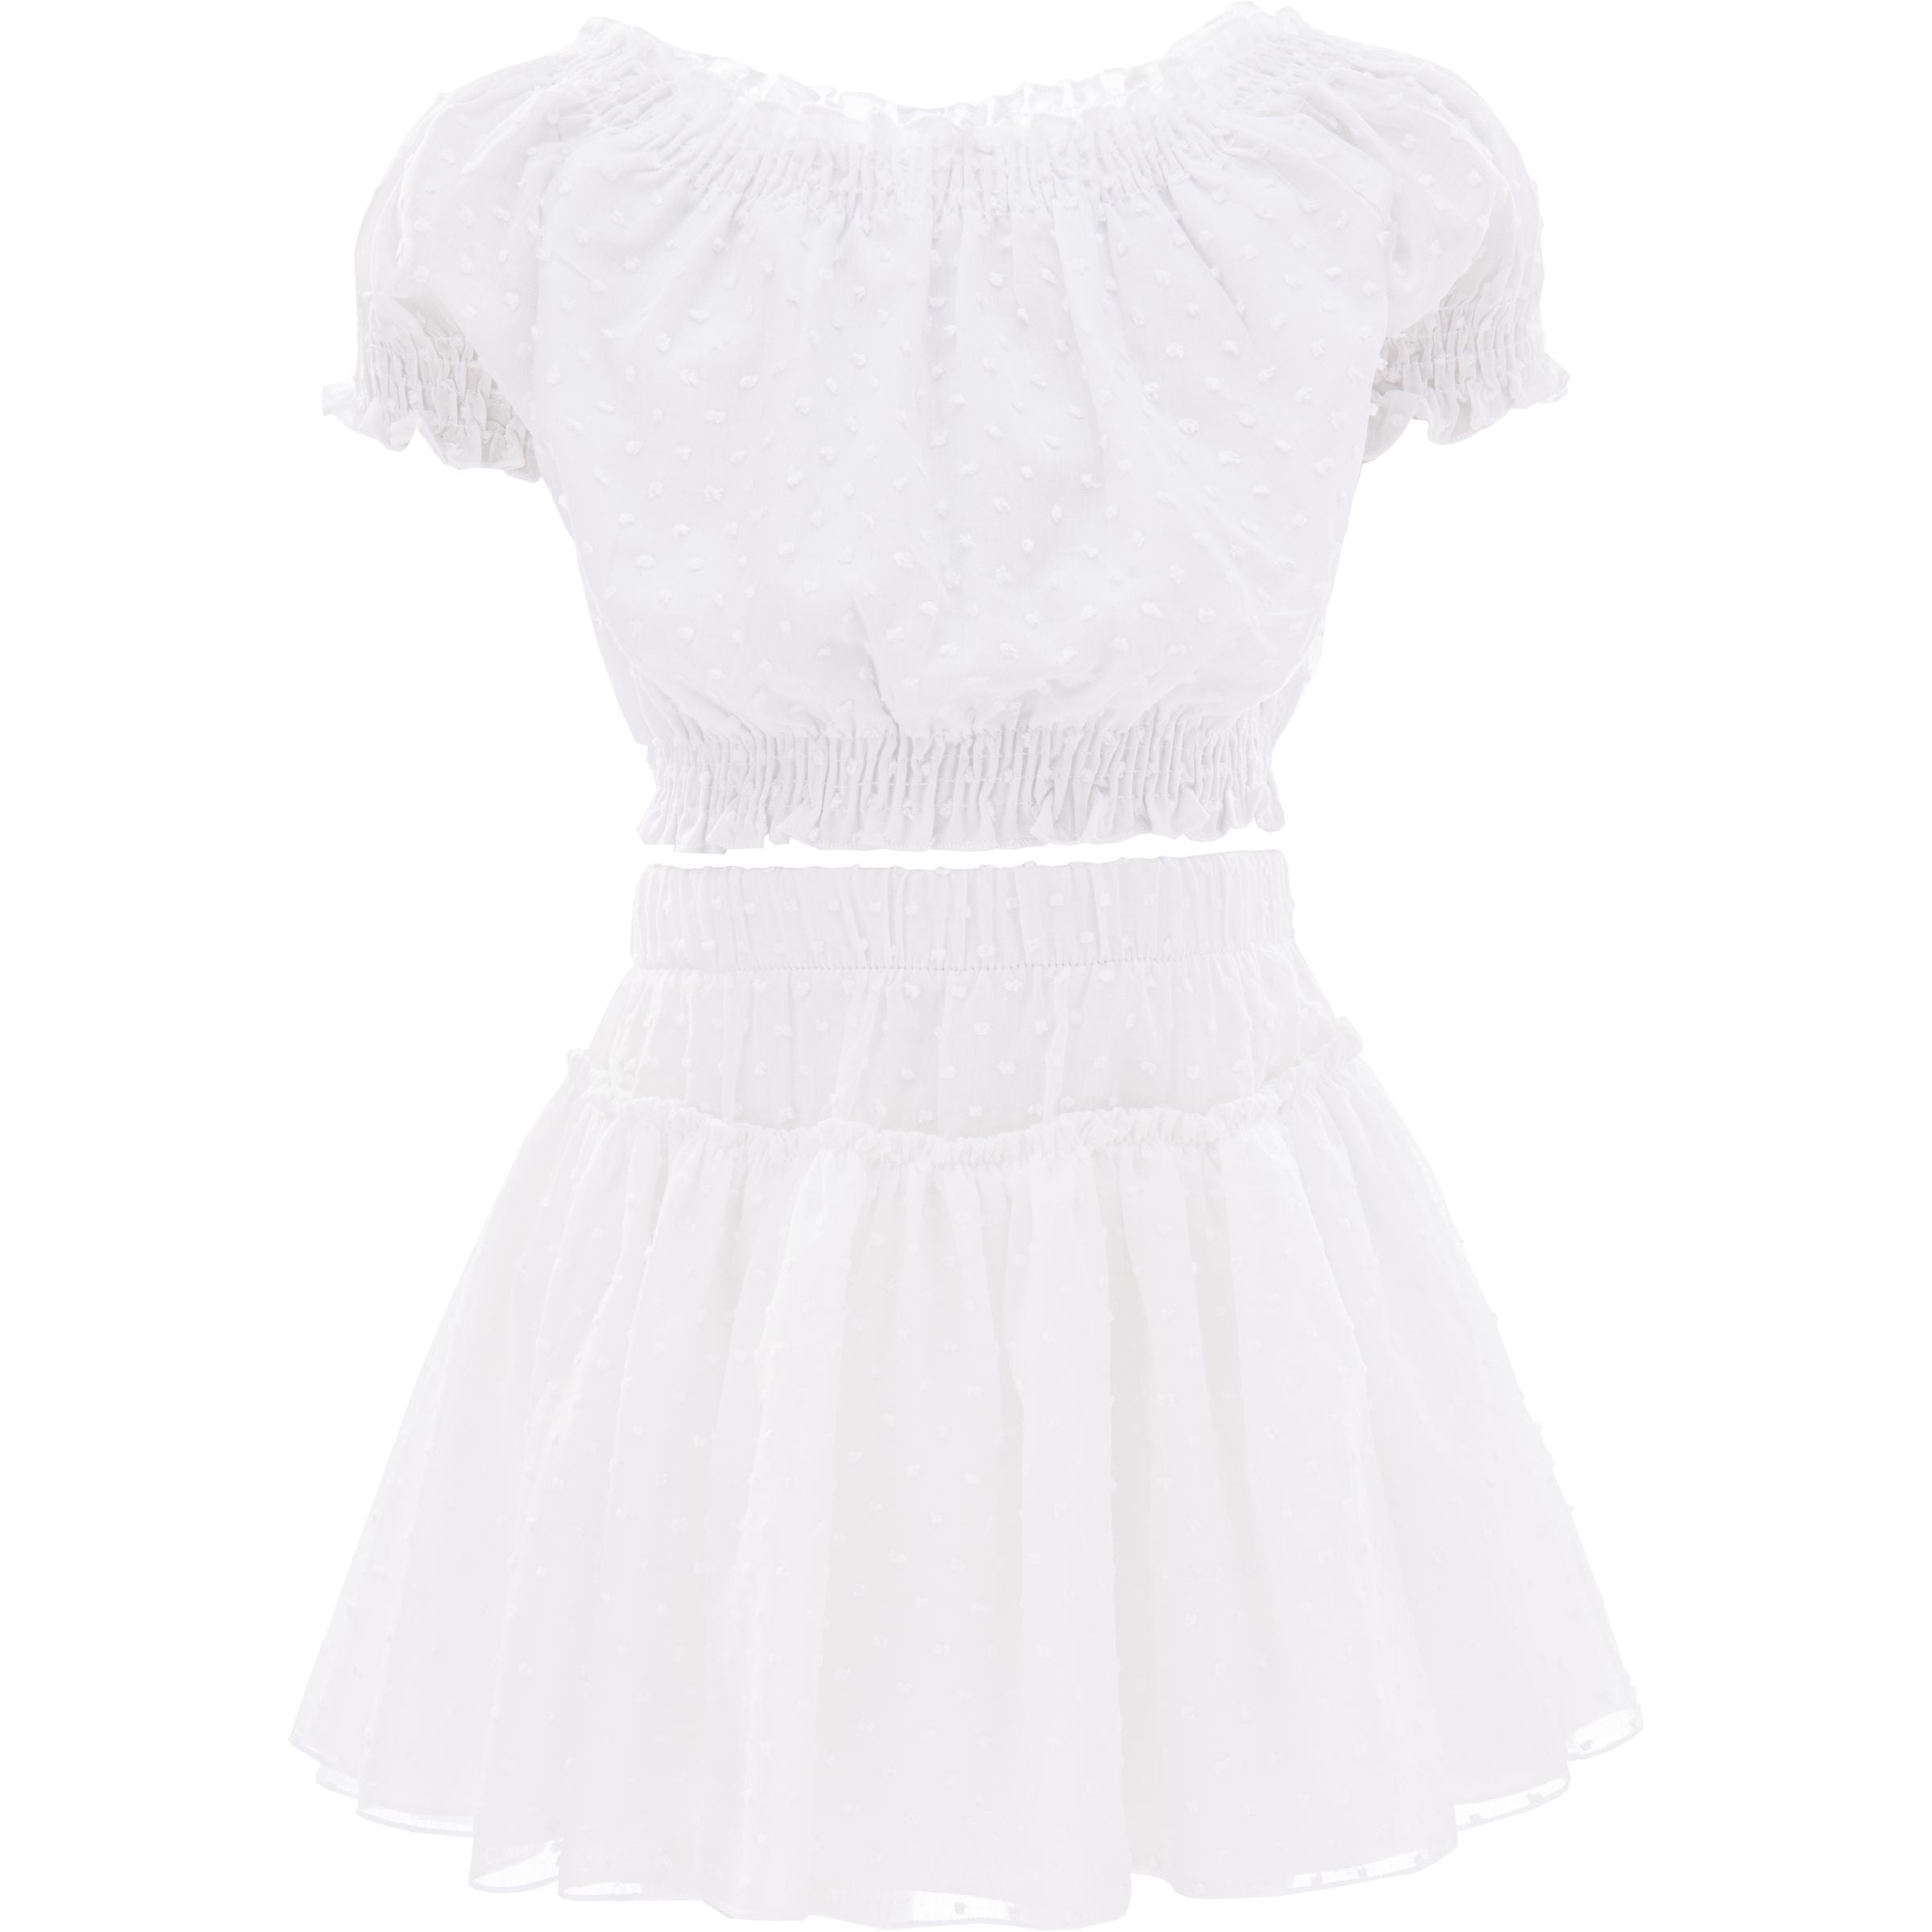 kids-atelier-mimi-tutu-kid-girl-white-st-tropez-ruffle-outfit-mt2301-white